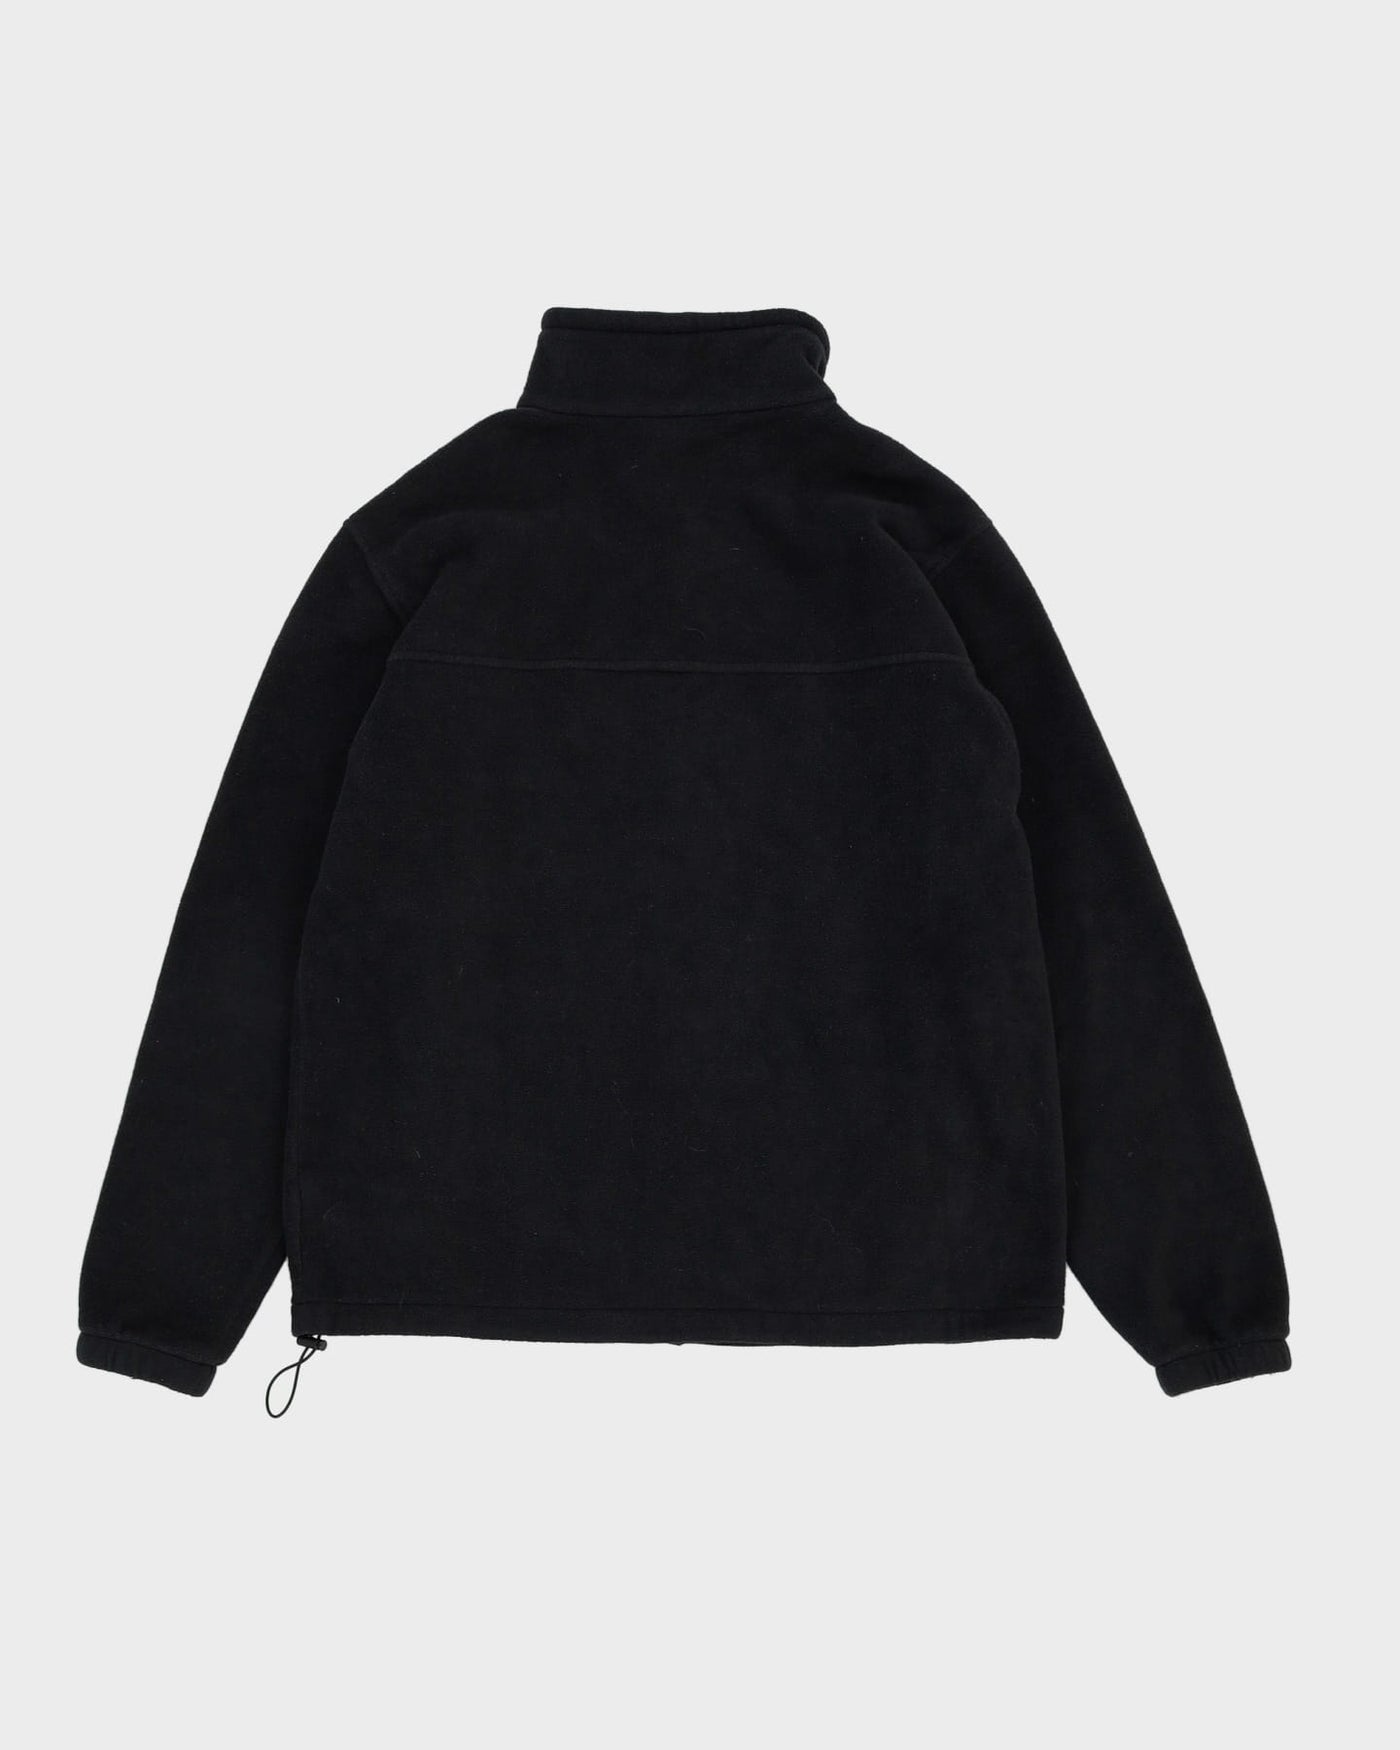 Columbia Black Full-Zip Fleece - XL